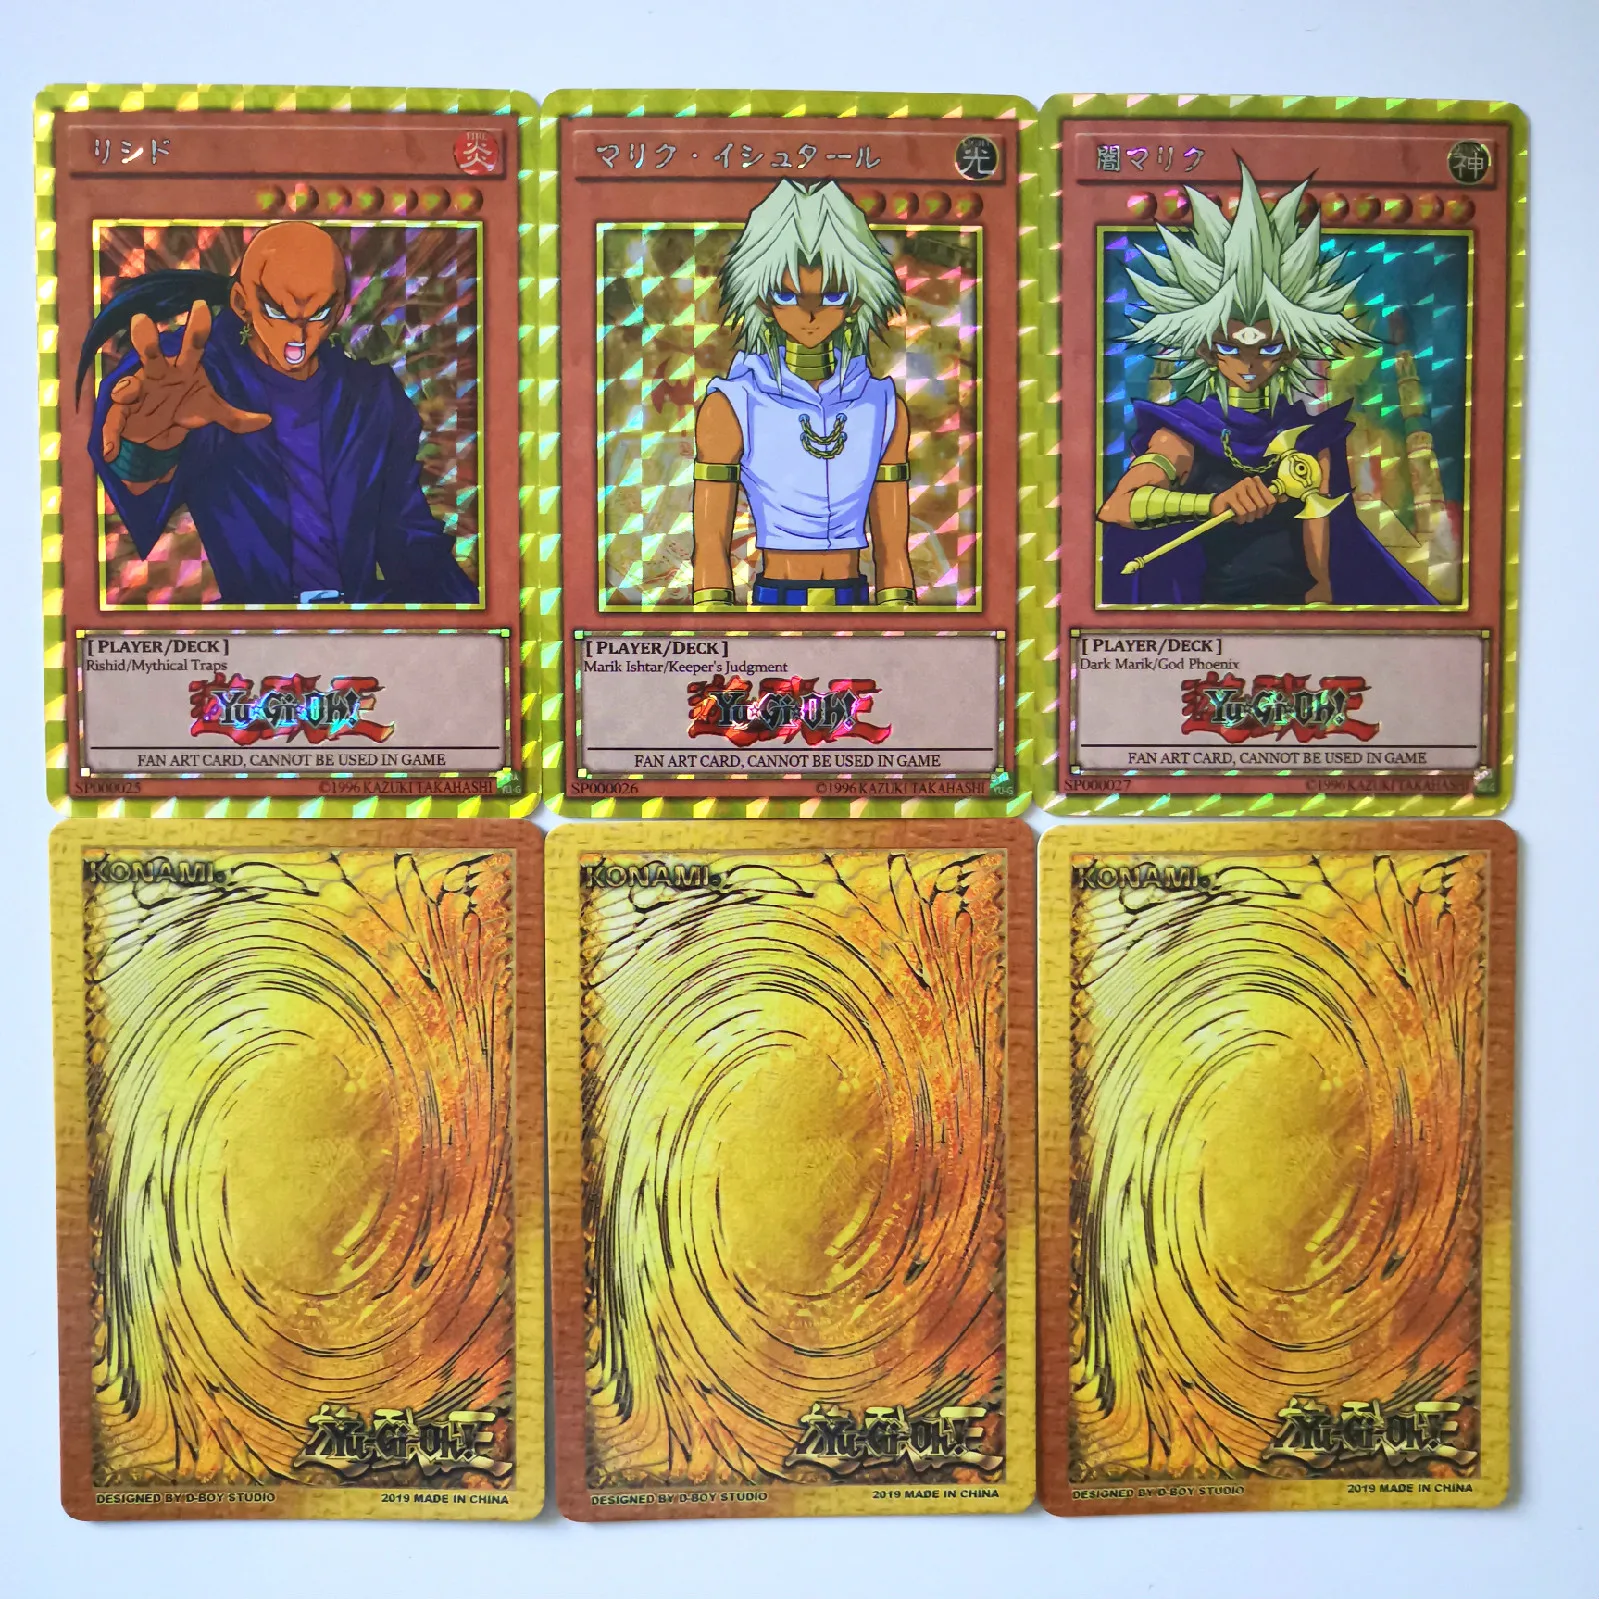 27 шт./компл. Yu-Gi-Oh первого поколения характер флэш-карточки с буквами хобби Коллекционные вещи игры Коллекция аниме-открытки